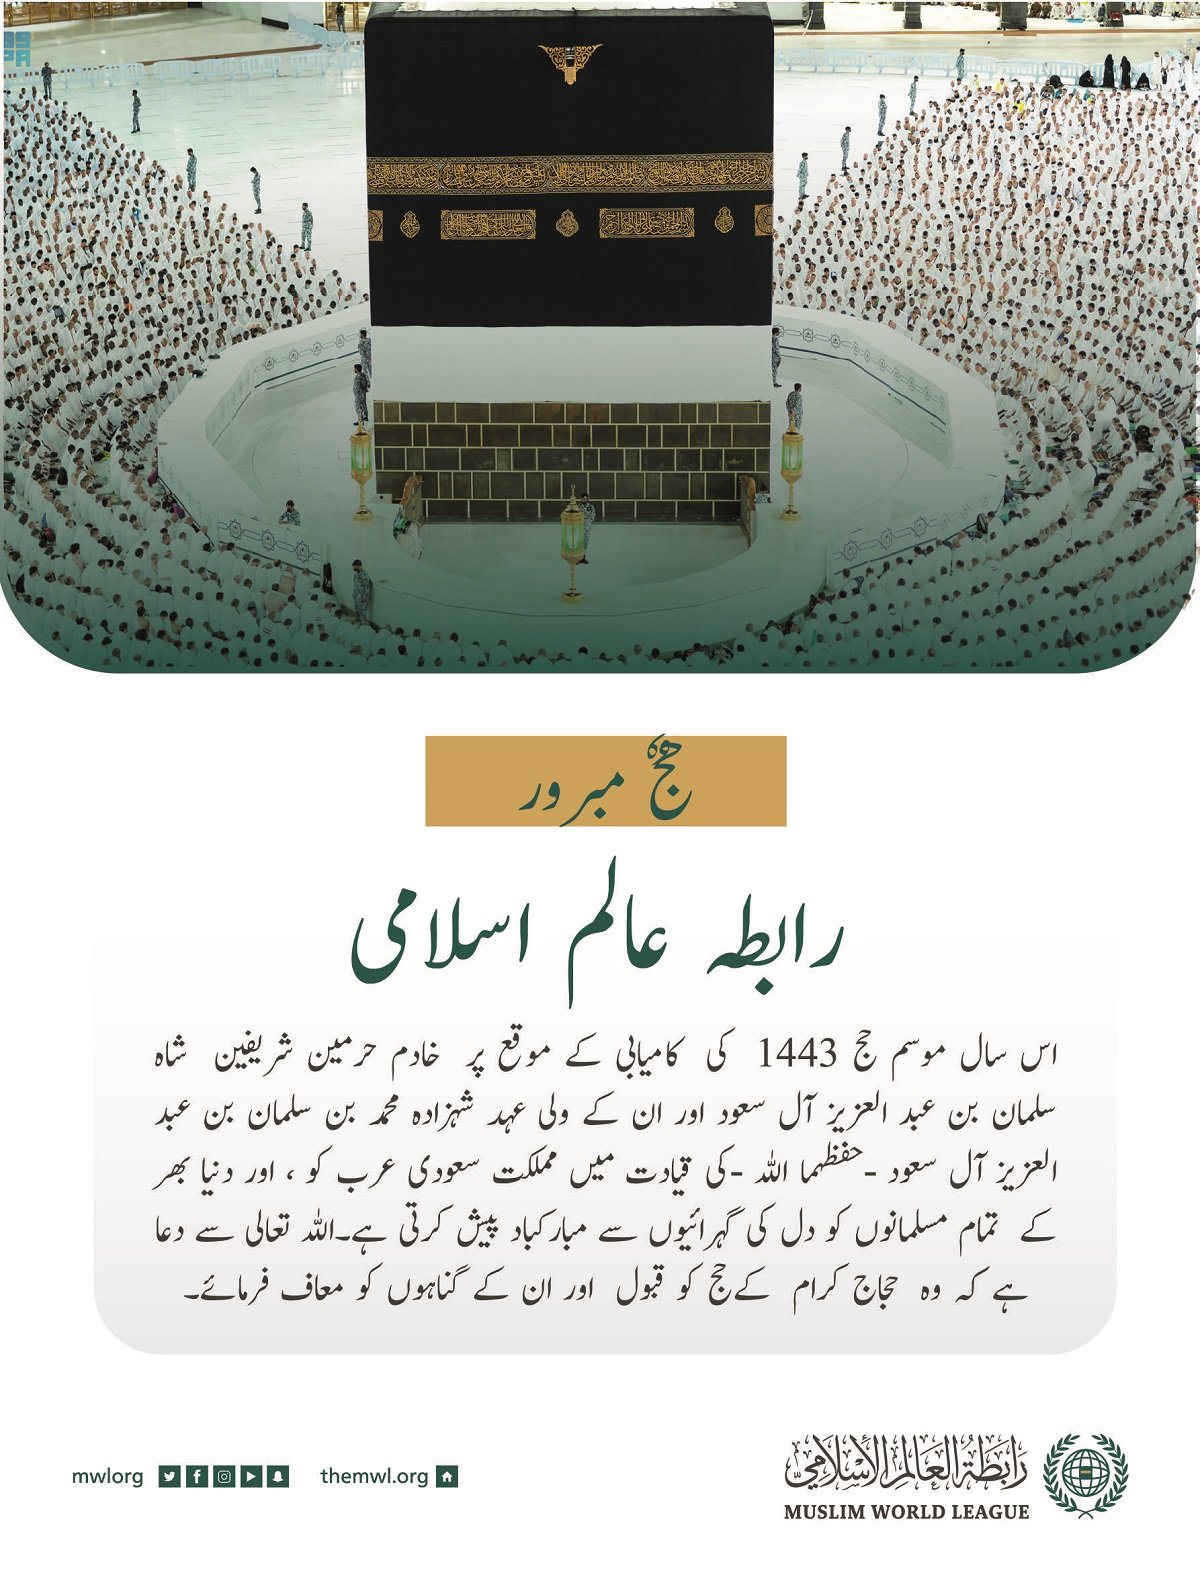 رابطہ عالم اسلامی کی جانب سے امسال موسم حج 1443 کی کامیابی کے موقع پر مبارکباد کا پیغام: